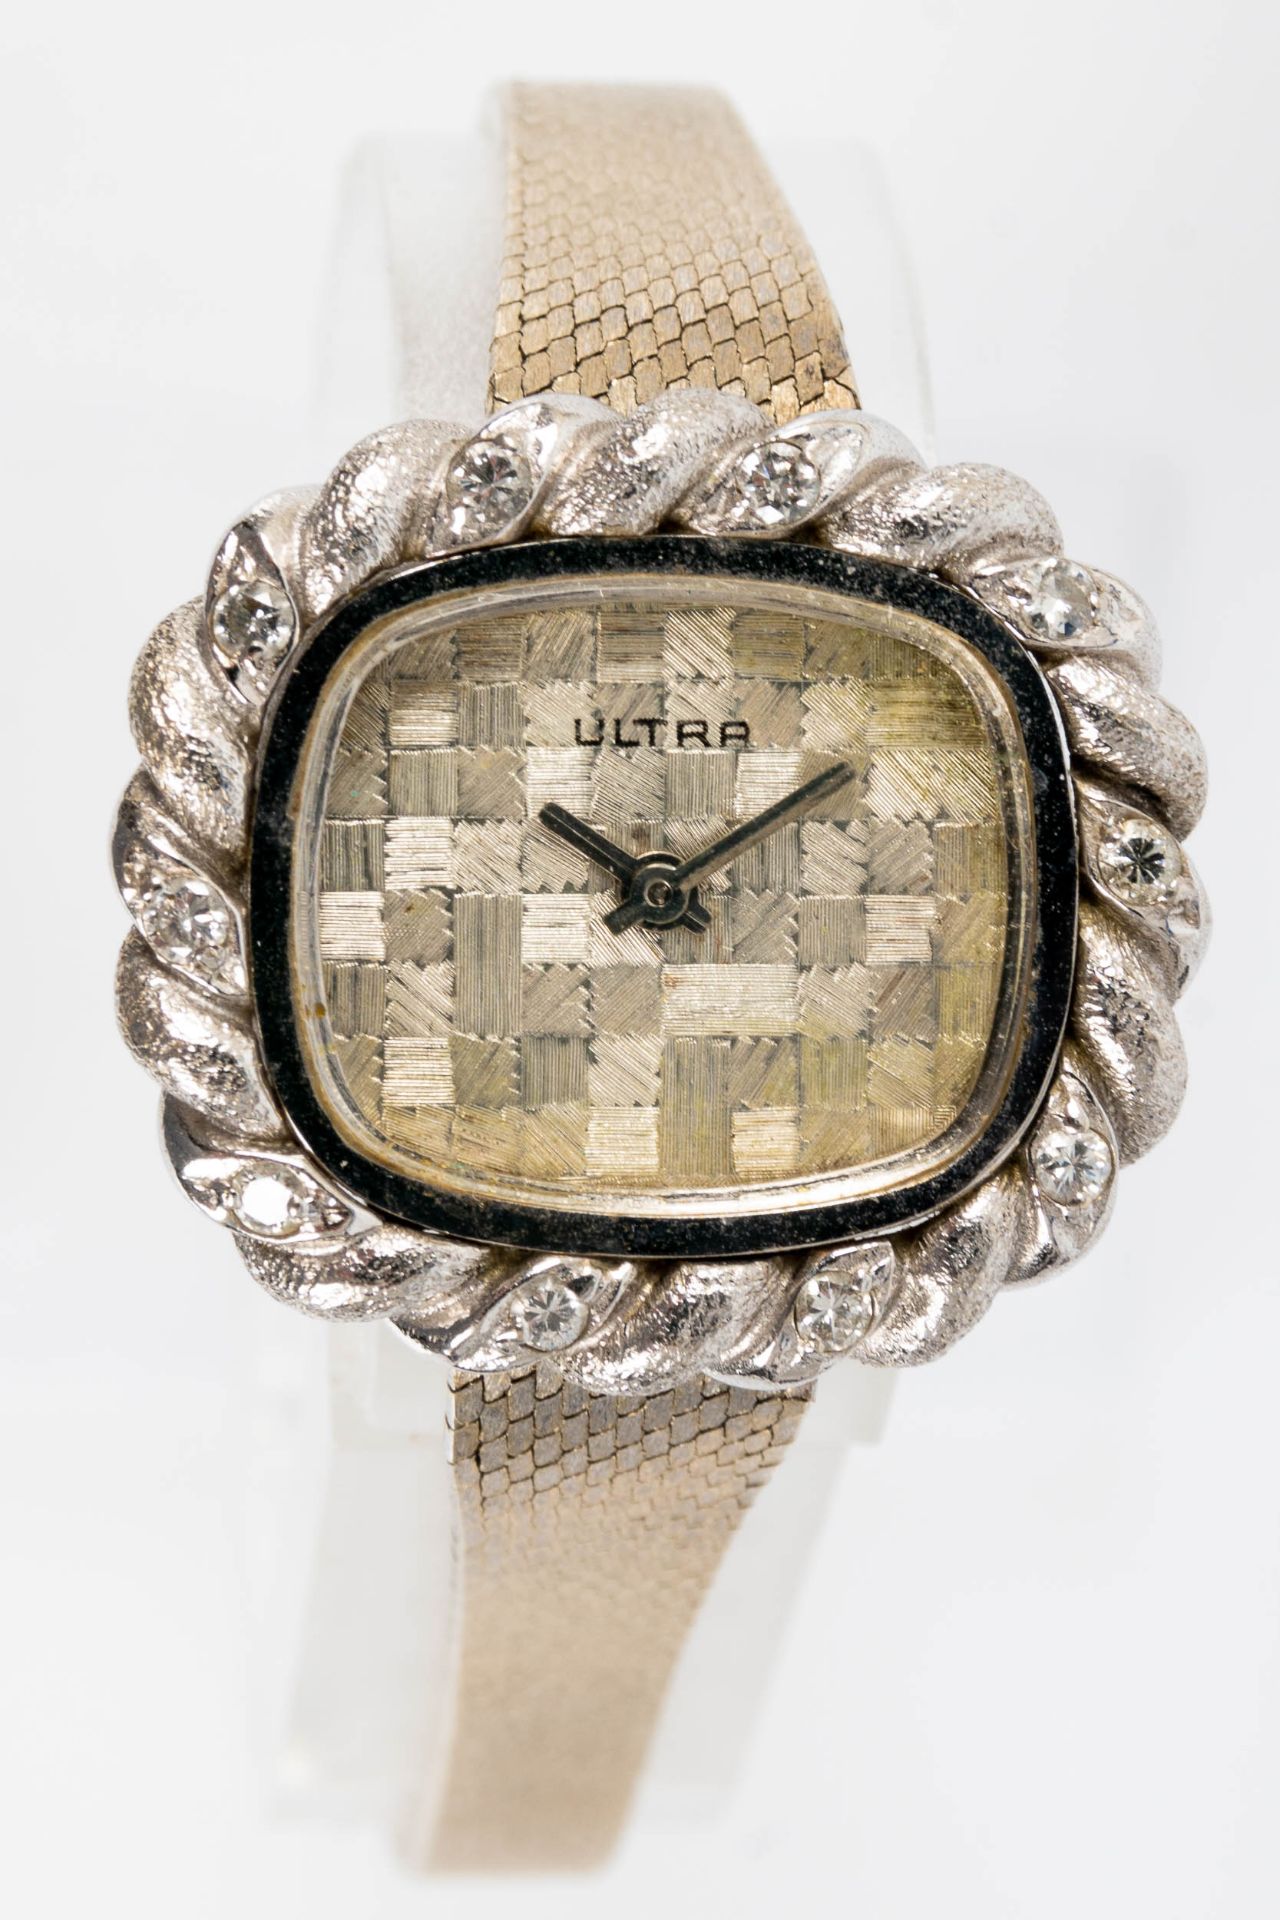 ULTRA Damenarmbanduhr aus der Uhrenfabrik Fritz Lang ( Ispringen & Eisingen, bestand zwischen 1952  - Bild 4 aus 7